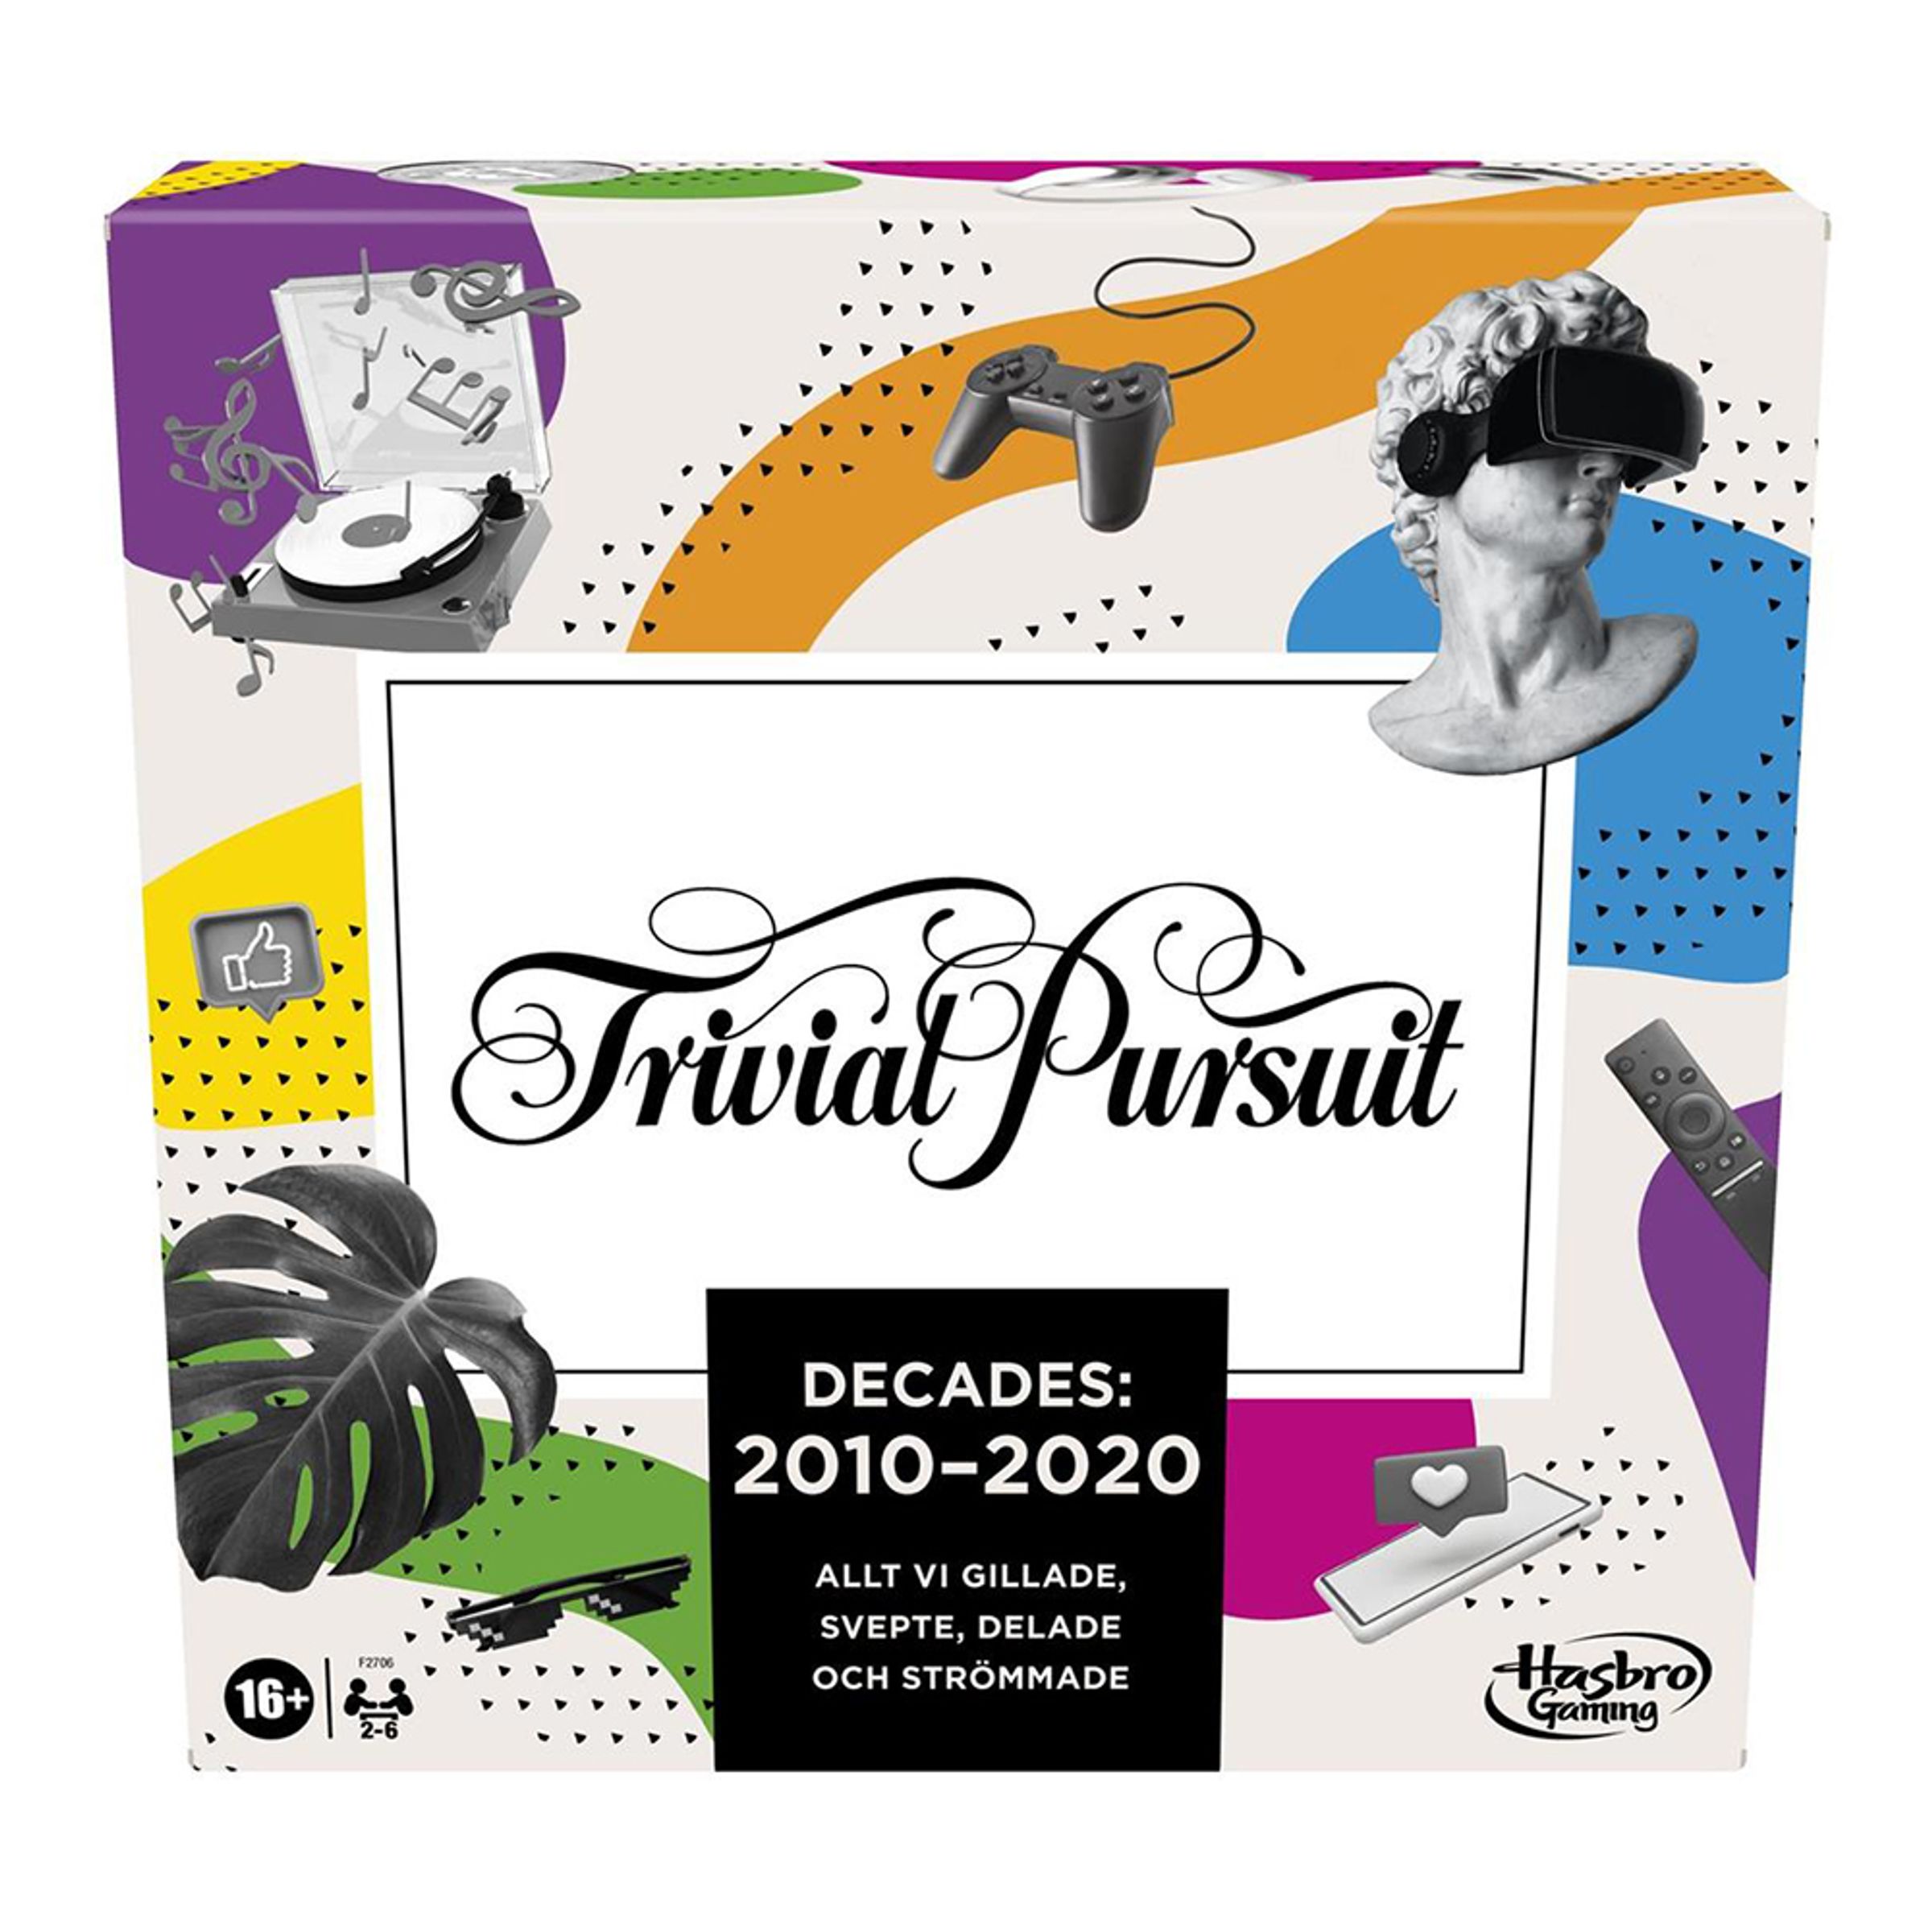 Trival Pursuit Decades: 2010-2020